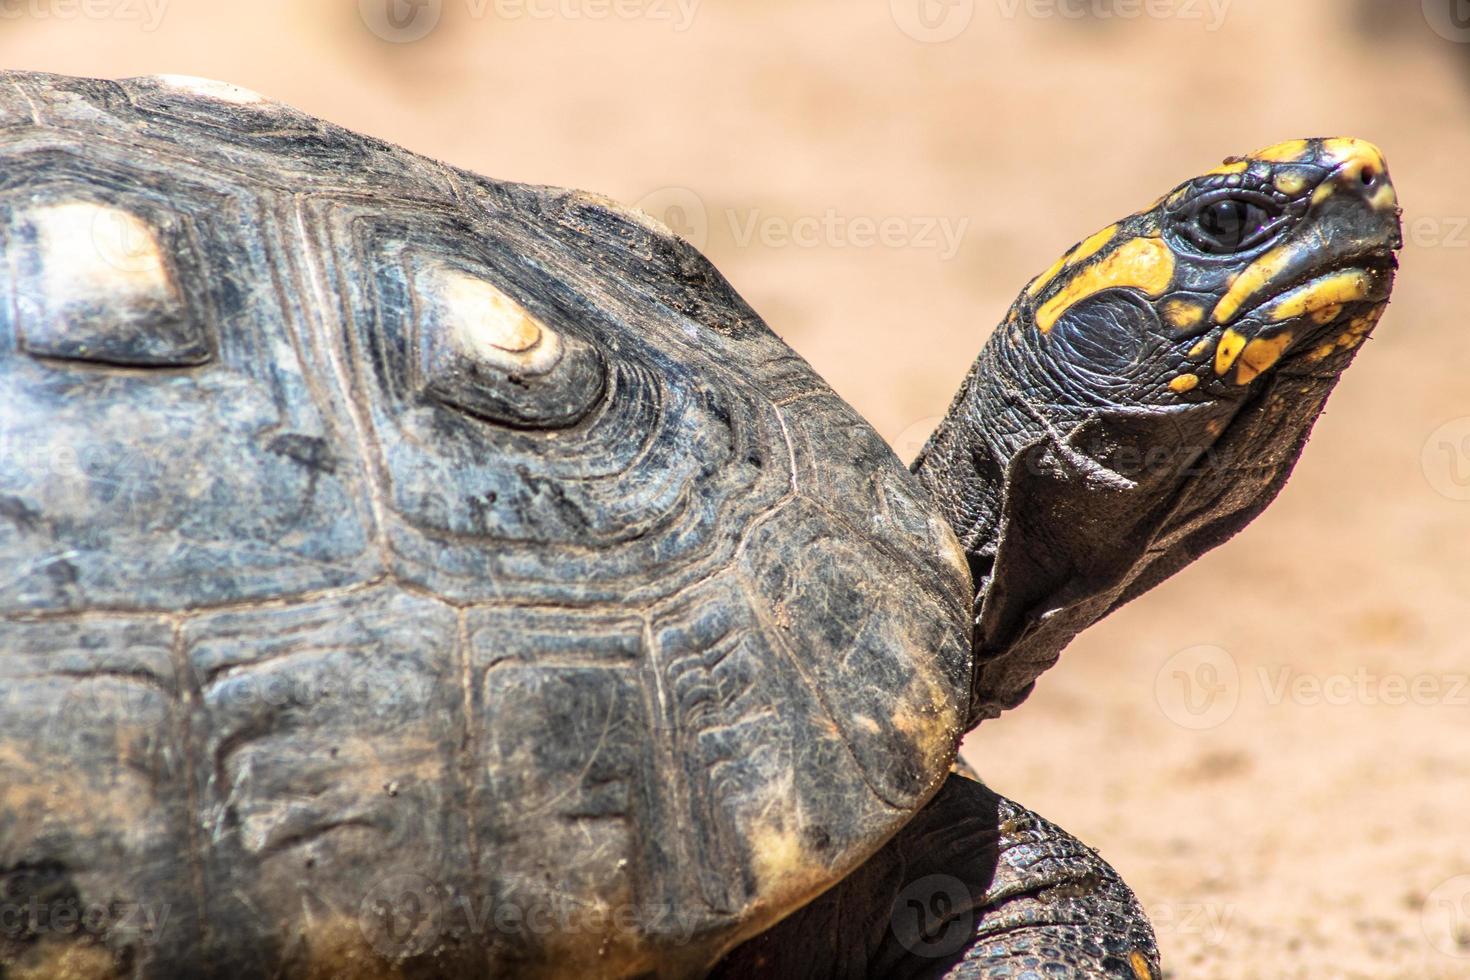 Red-legged tortoise walking on sand in Brazil photo